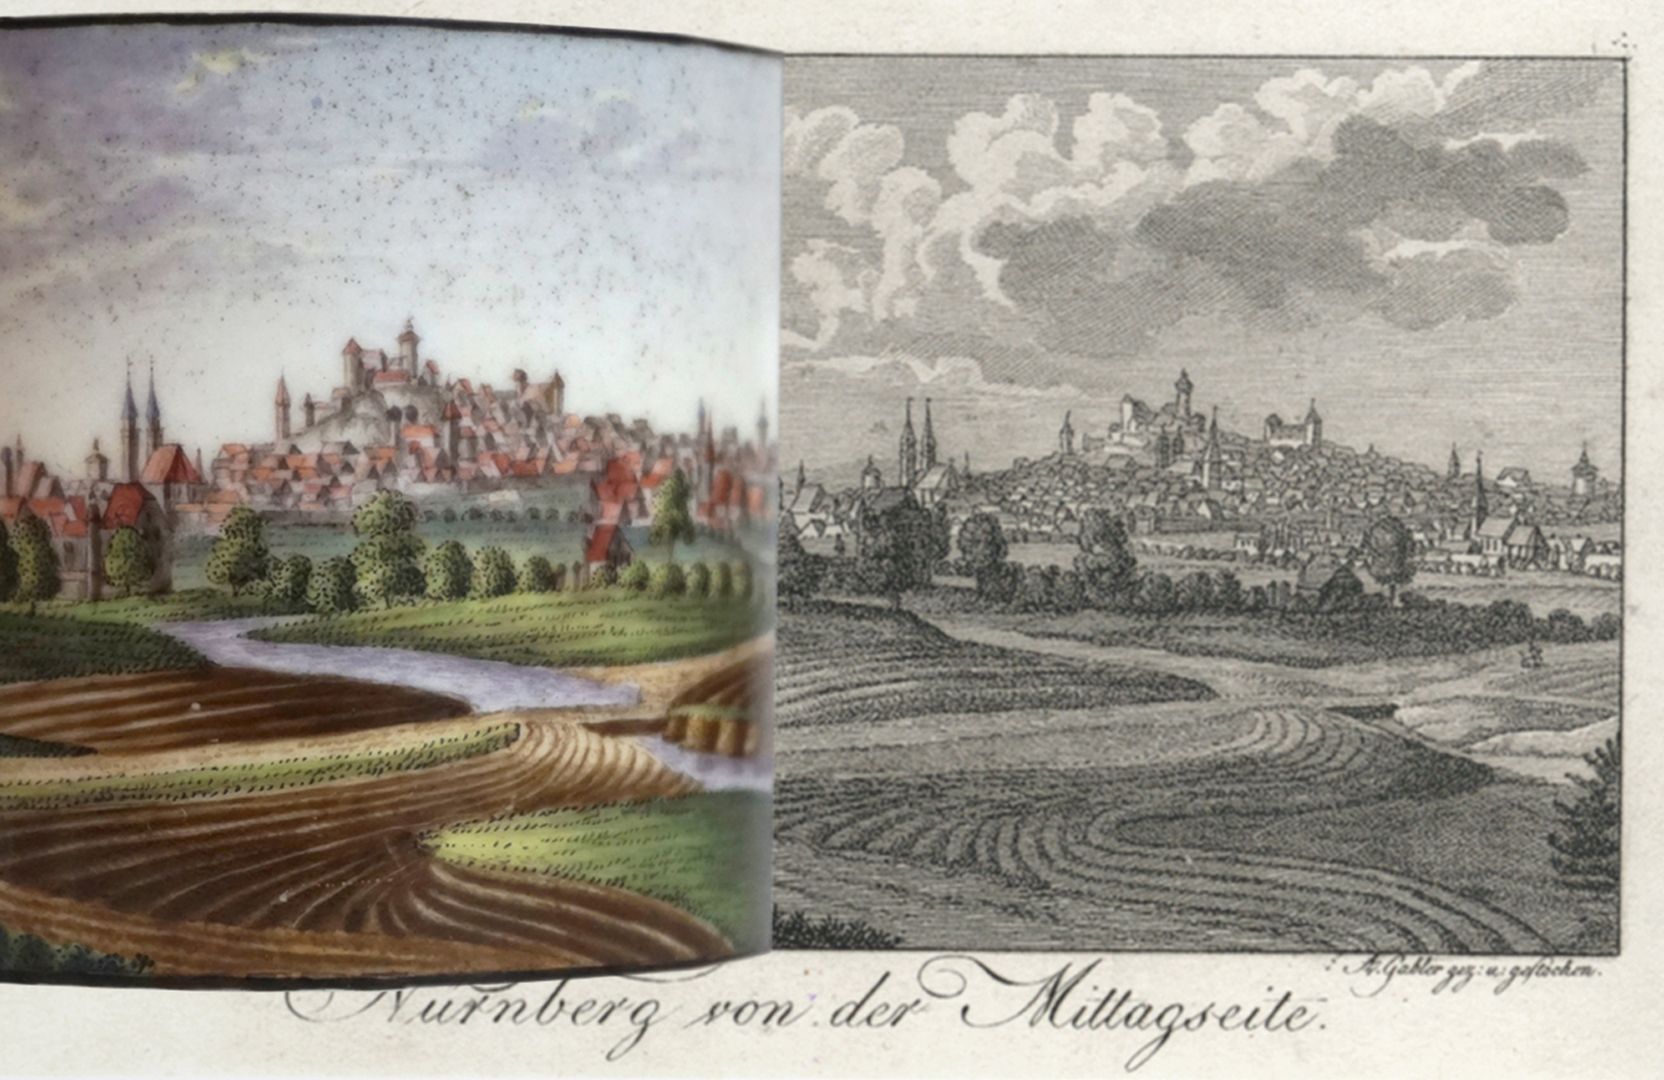 Tasse mit Nürnberg-Ansicht von „der Mittagsseite“ (Süden) Bildvergleich mit Vorlage und Bildausschnitt der Tasse